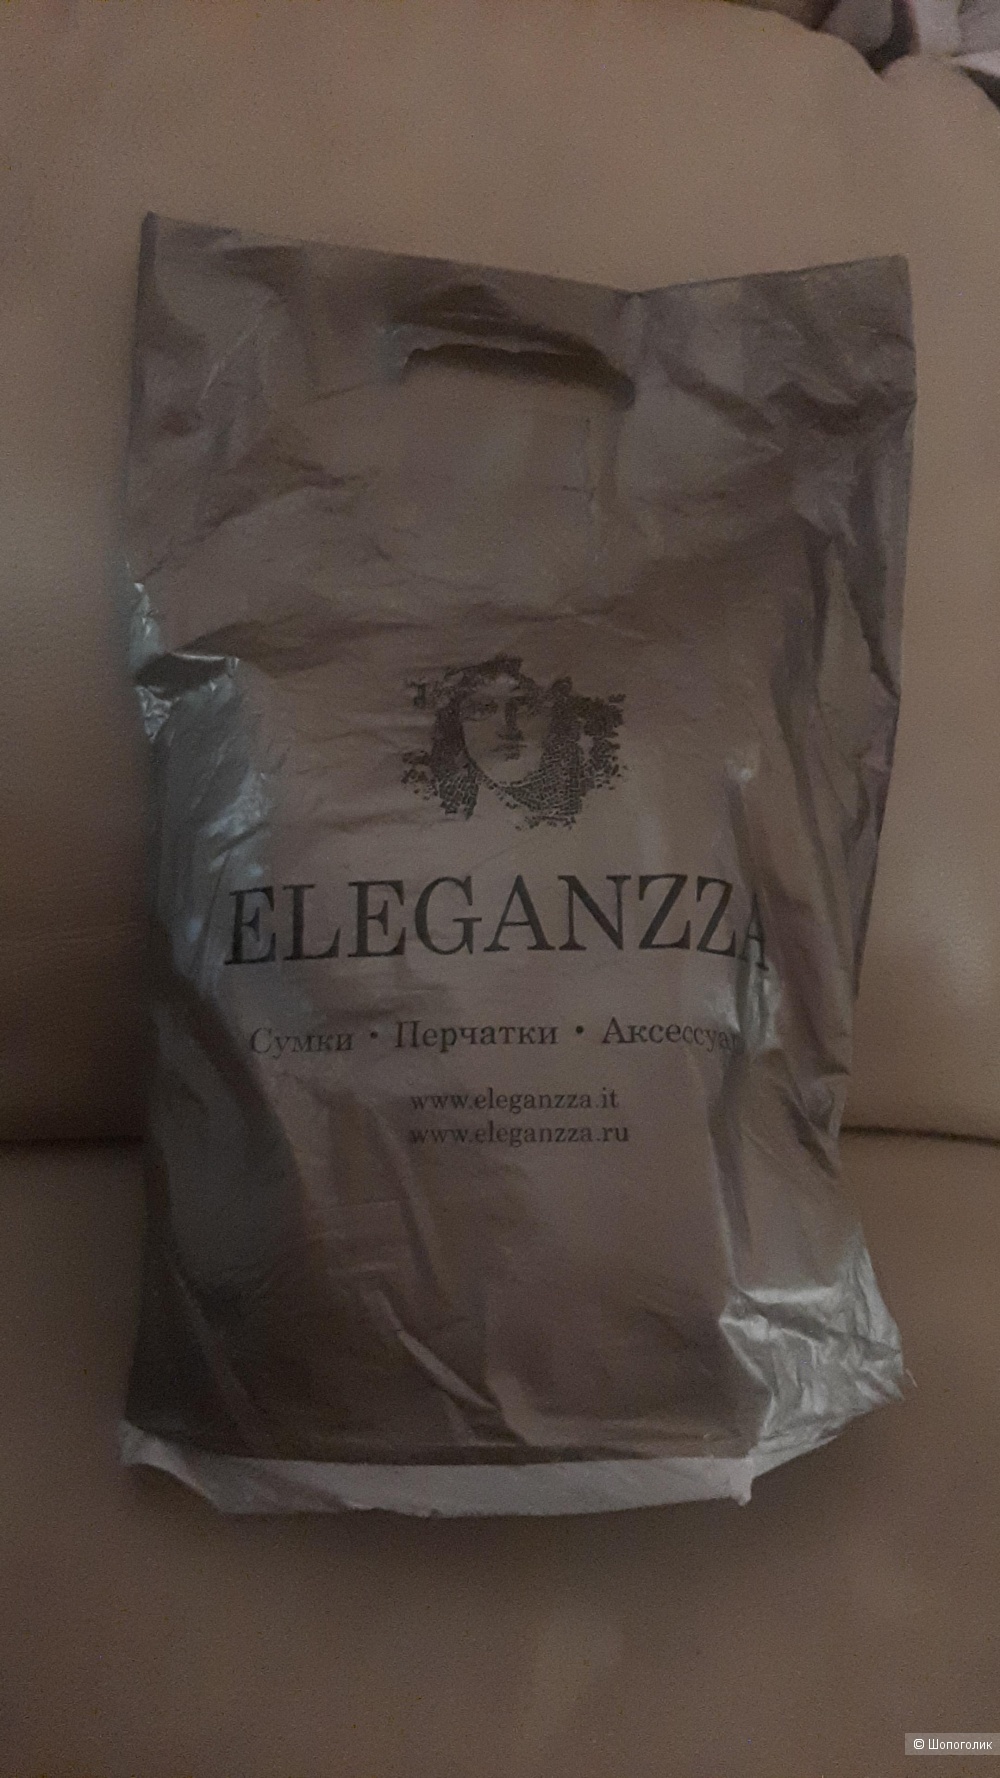 Сумка Eleganzza, one size